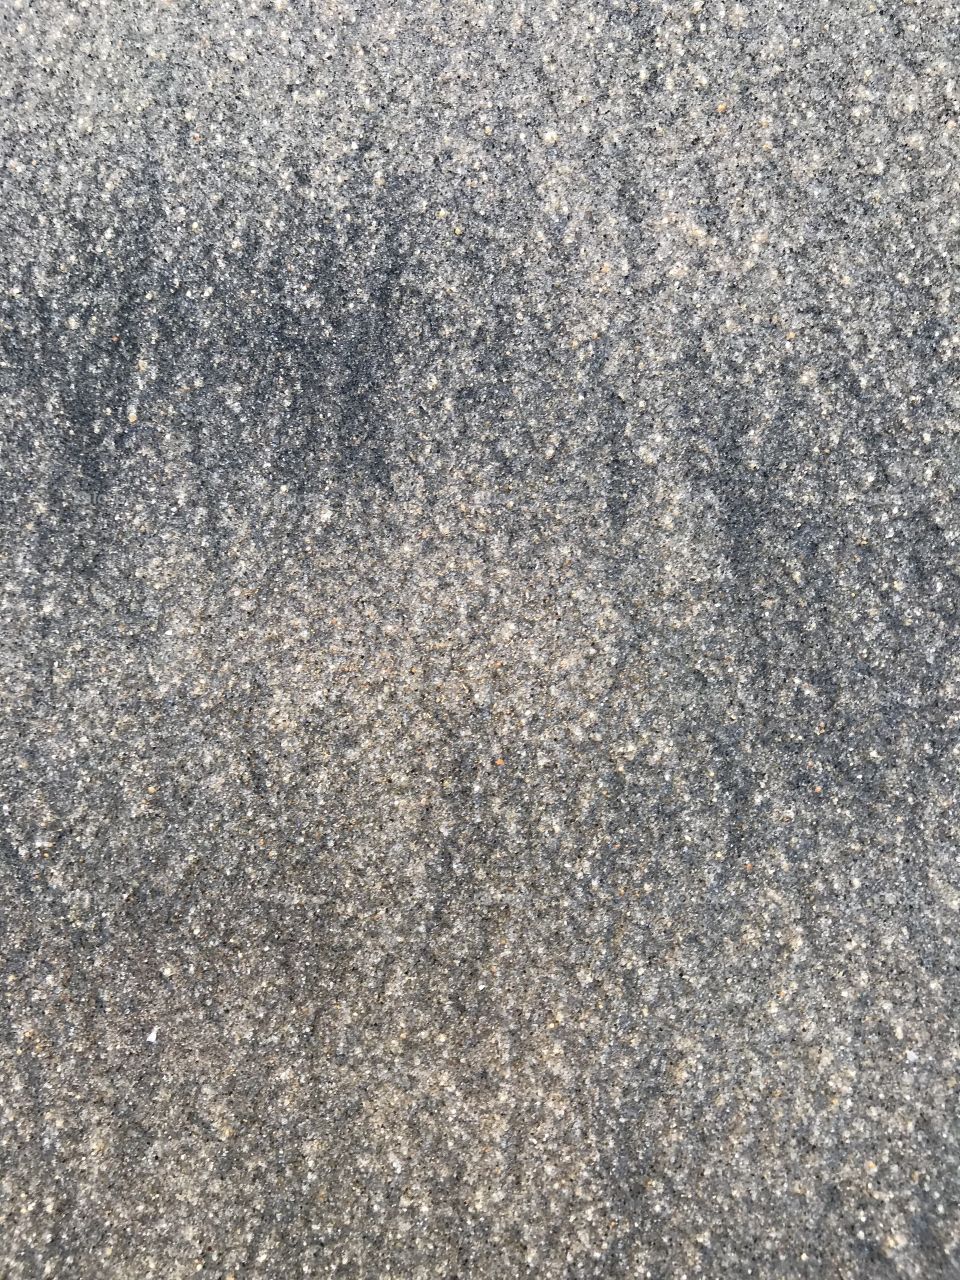 Sand on the beach 